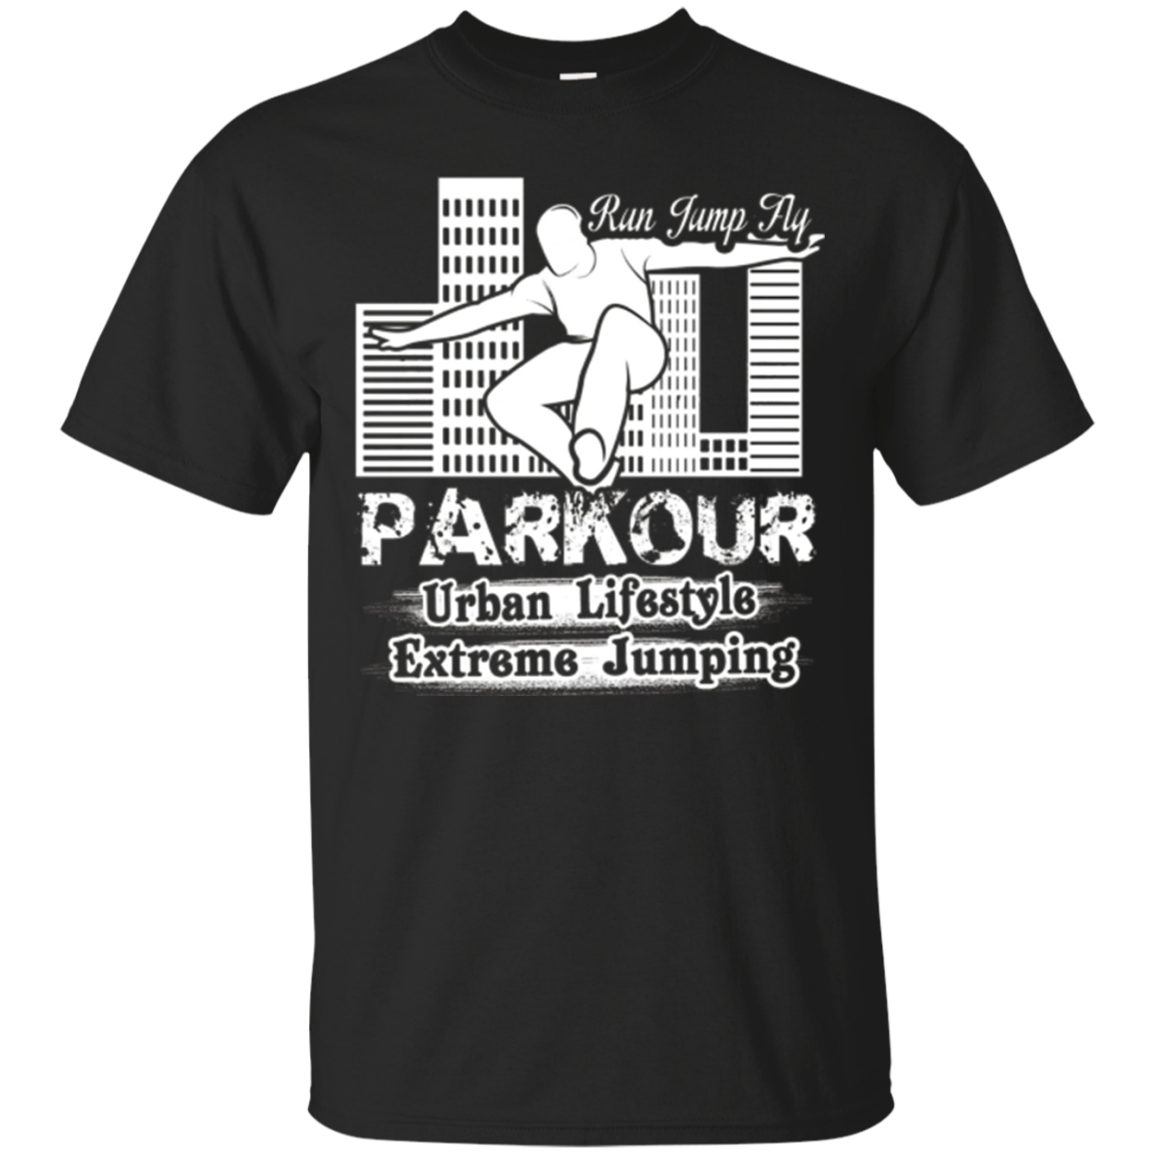 Parkour T Shirt - Parkour Run Jump Fly Shirt